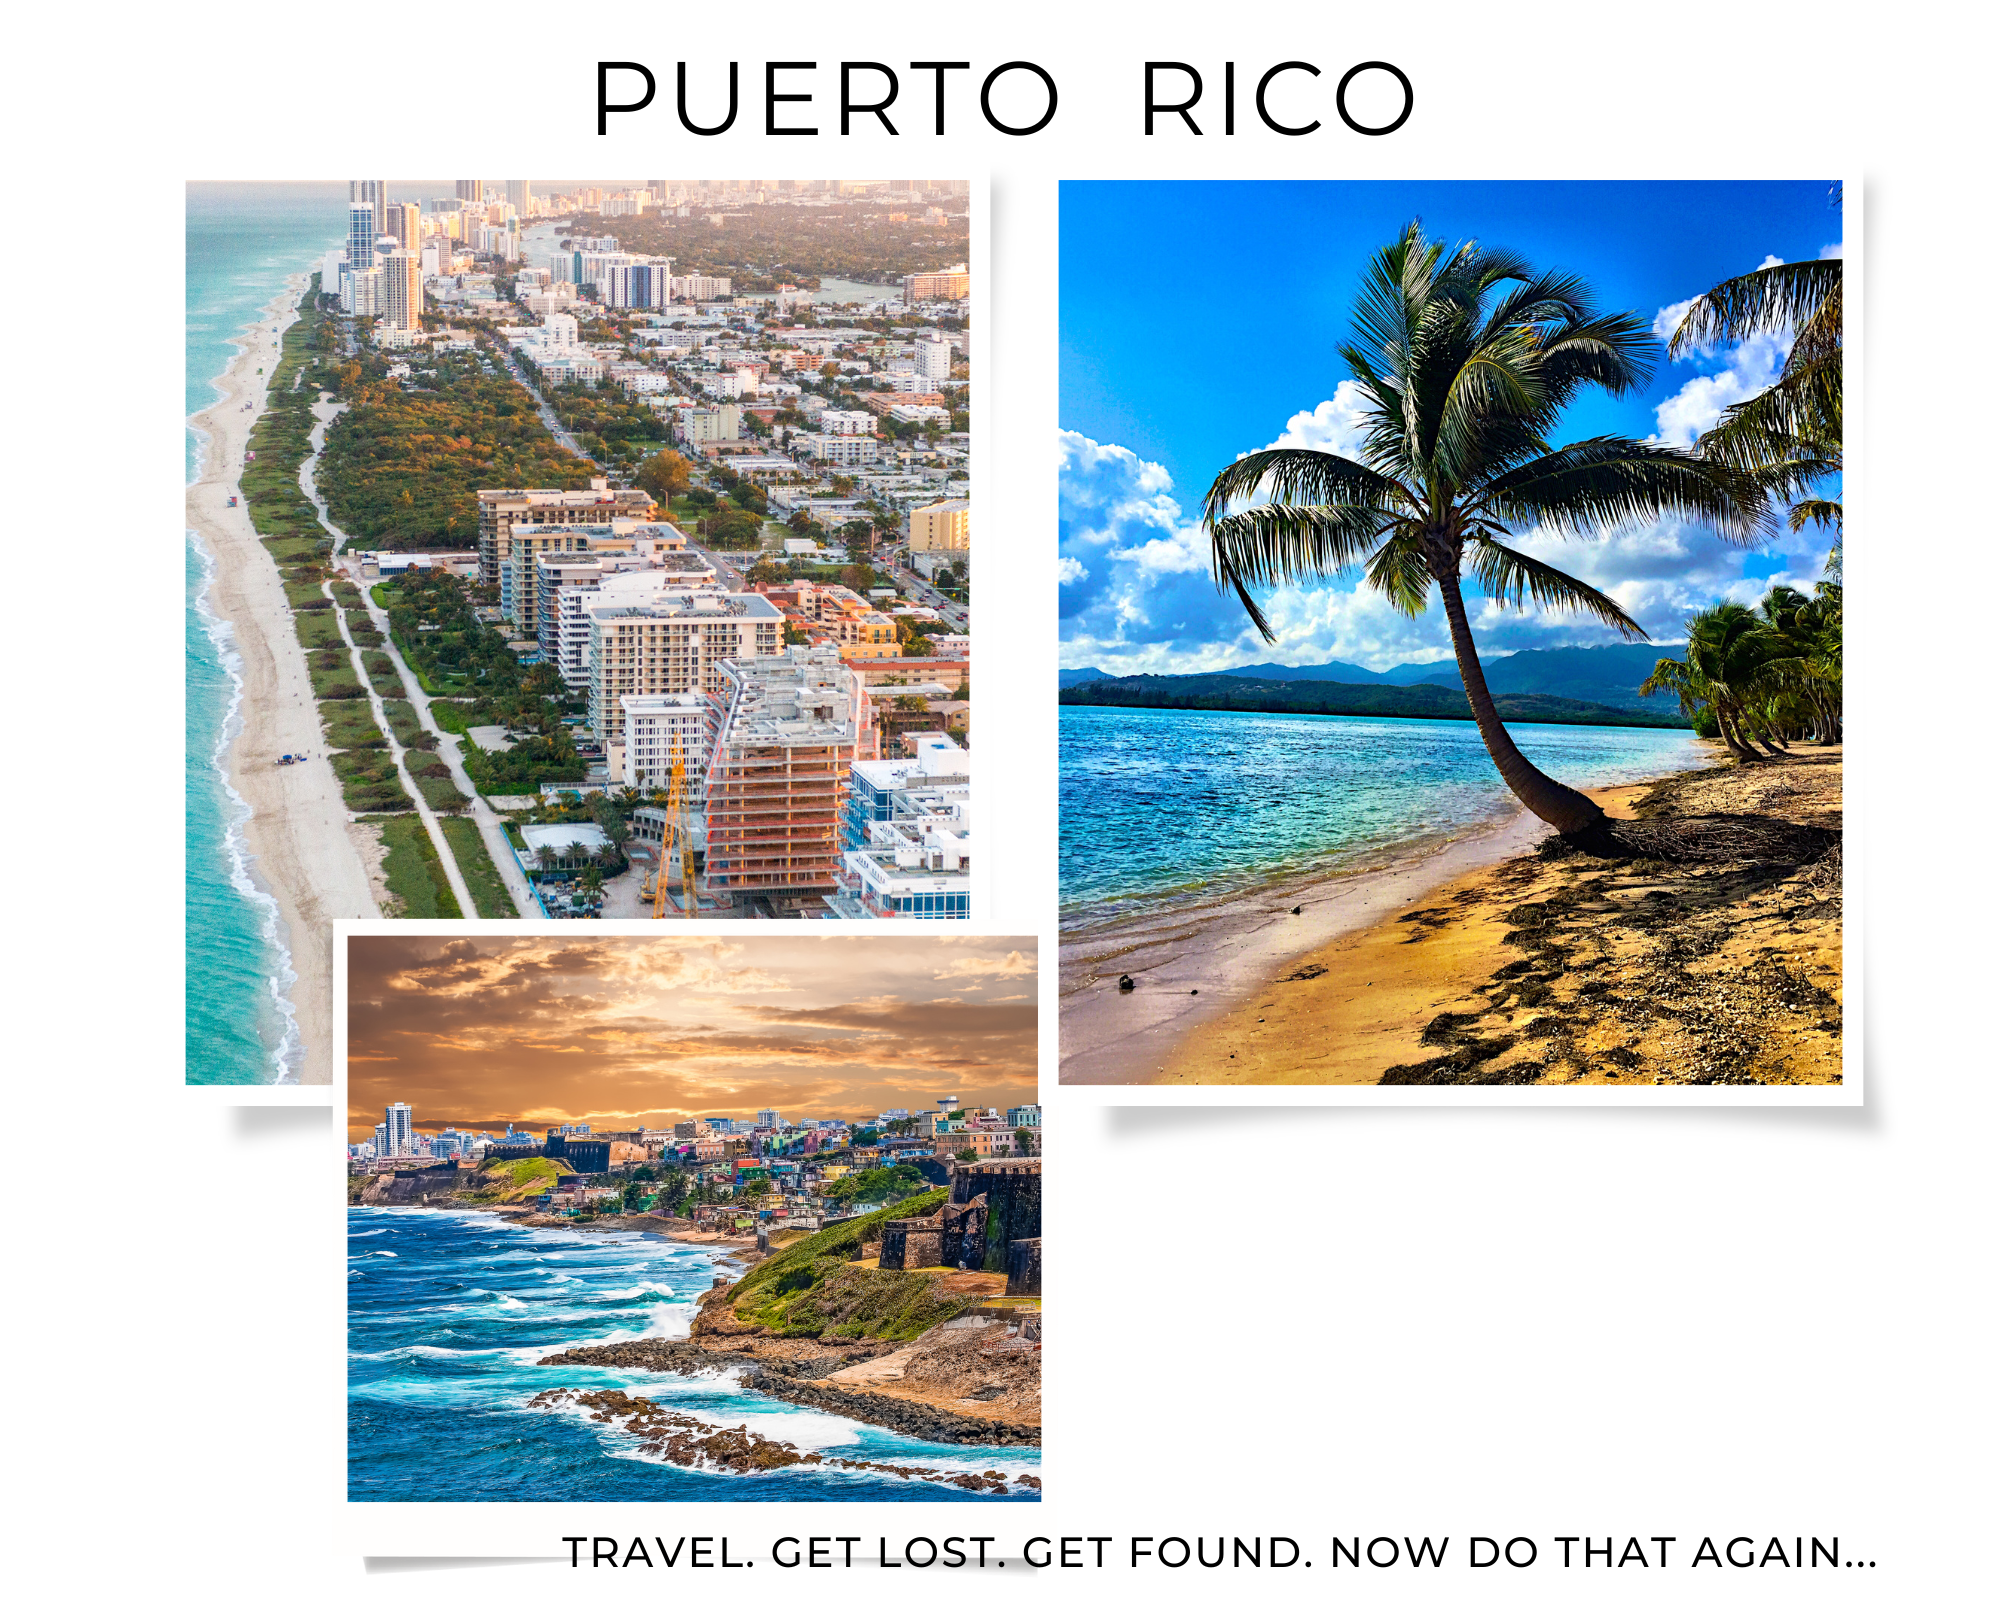 Puerto Rico Western Caribbean Islands